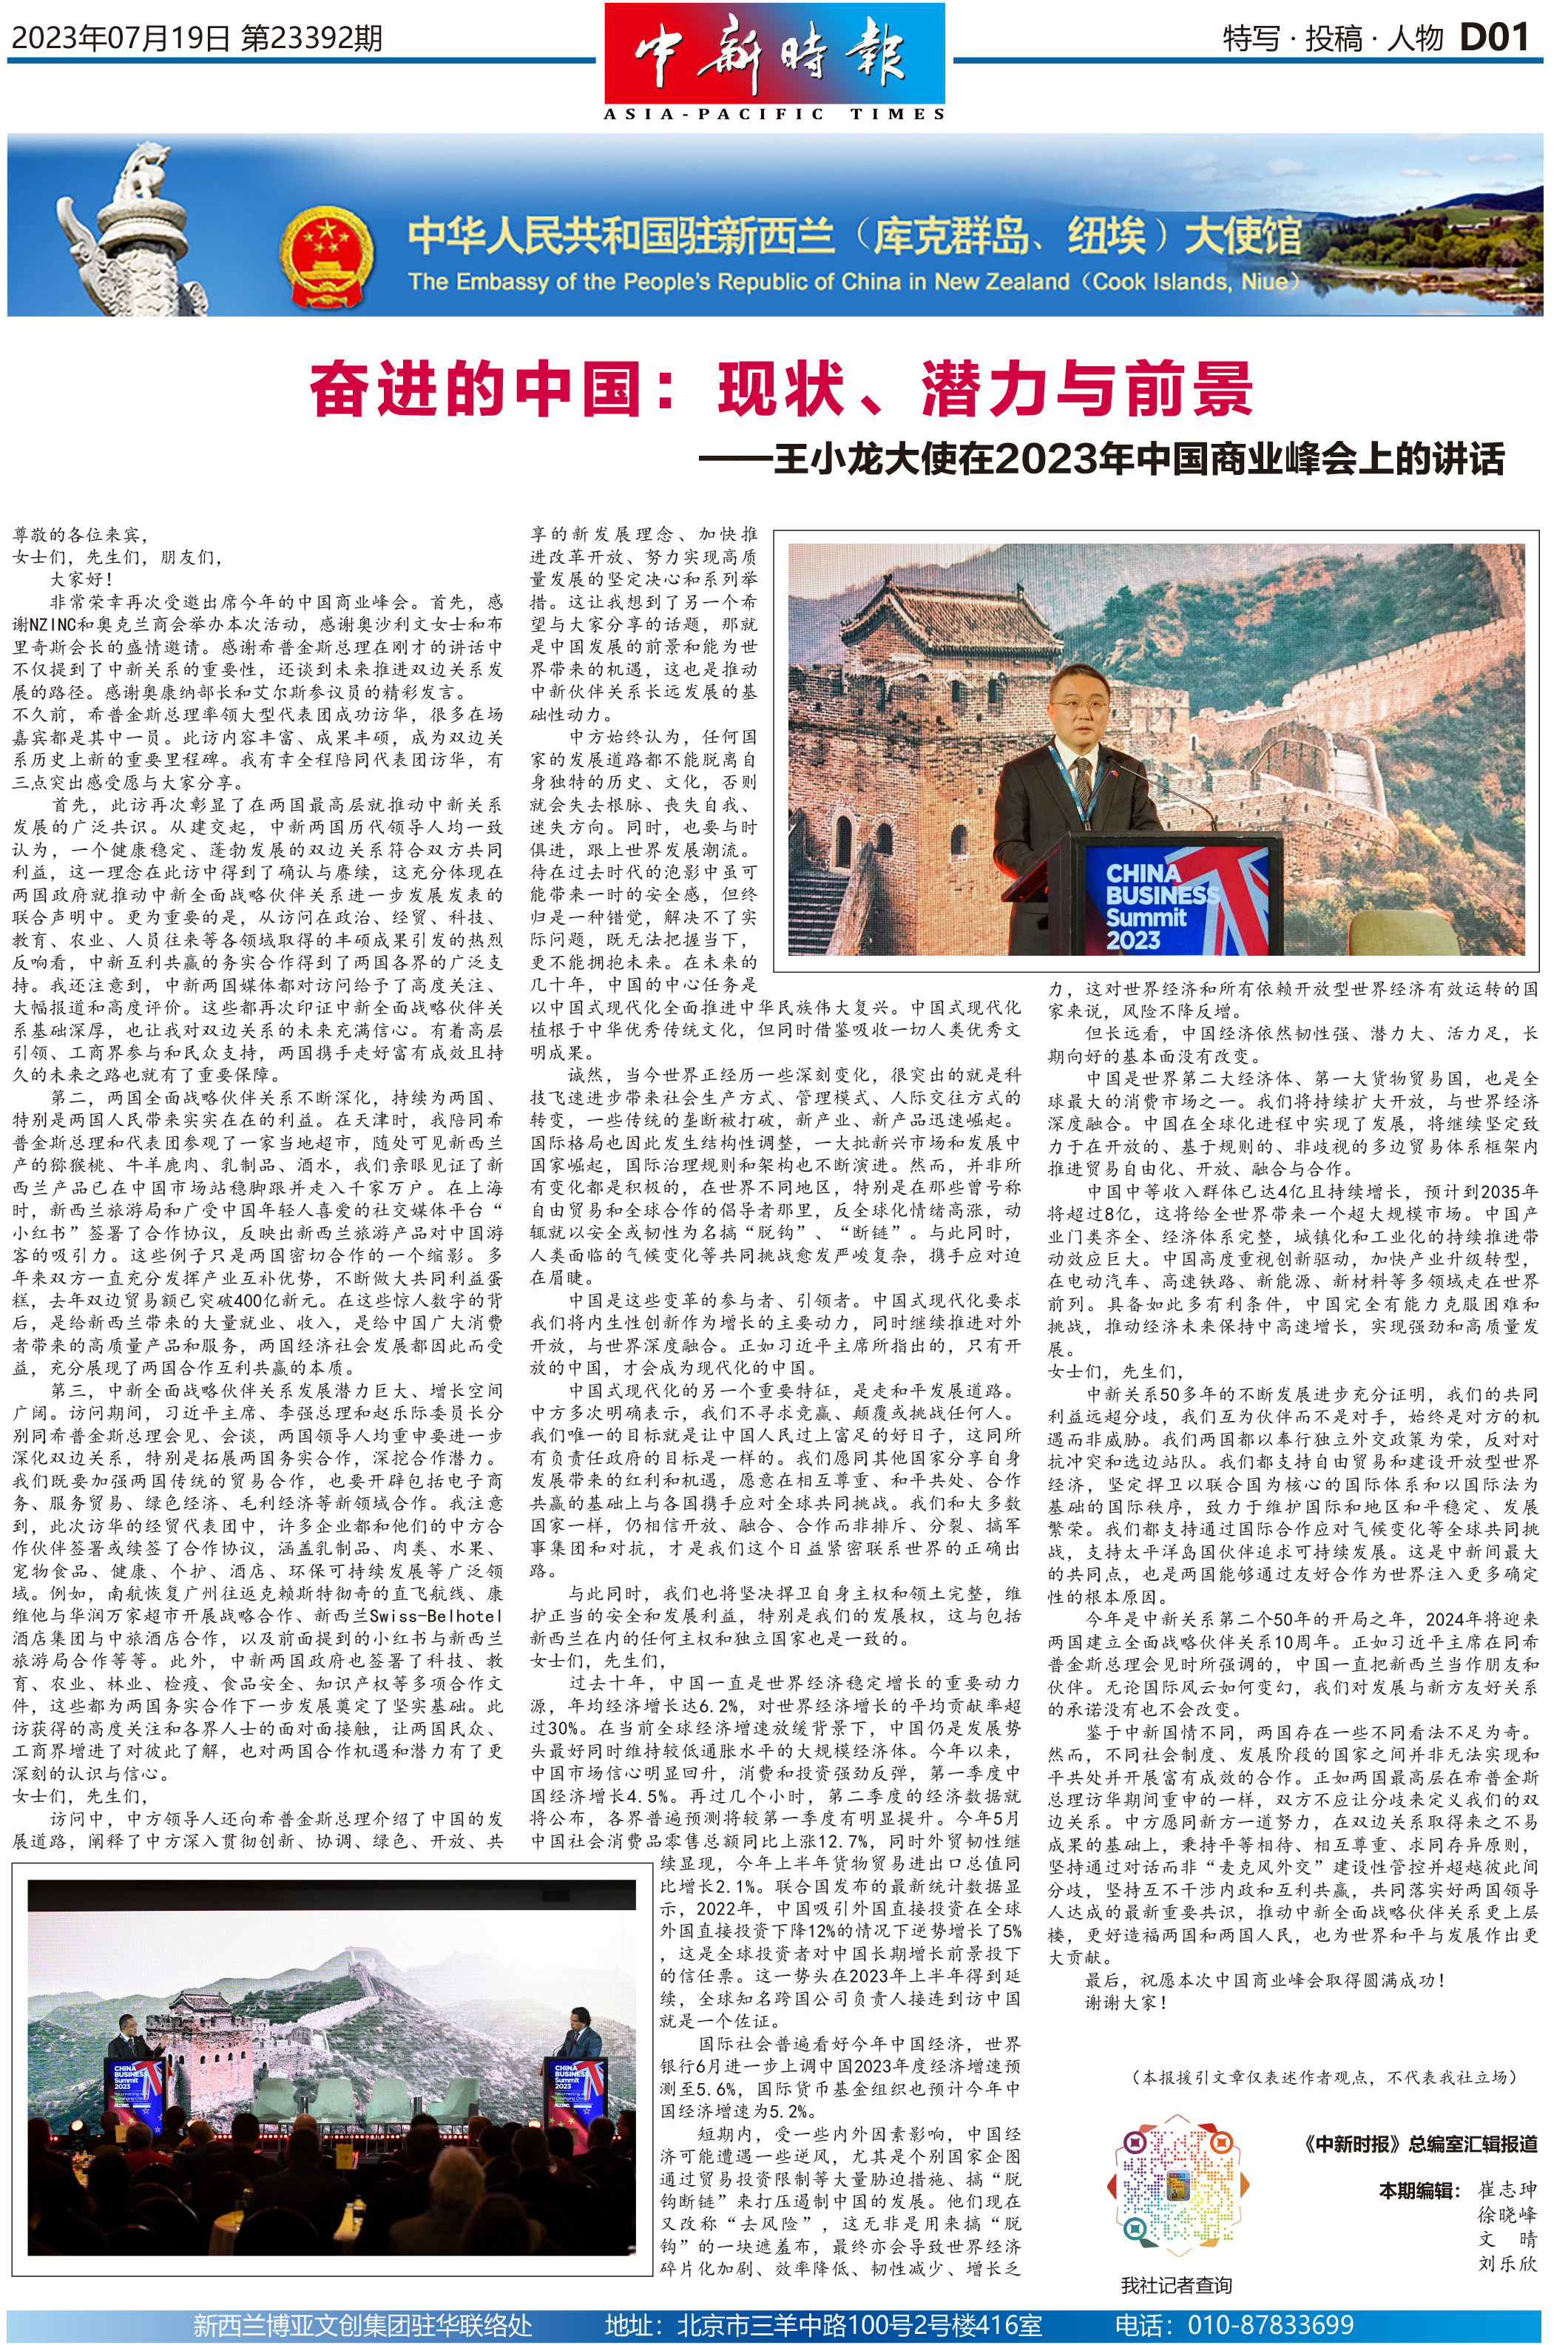 奋进的中国：现状、潜力与前景 ——王小龙大使在2023年中国商业峰会上的讲话